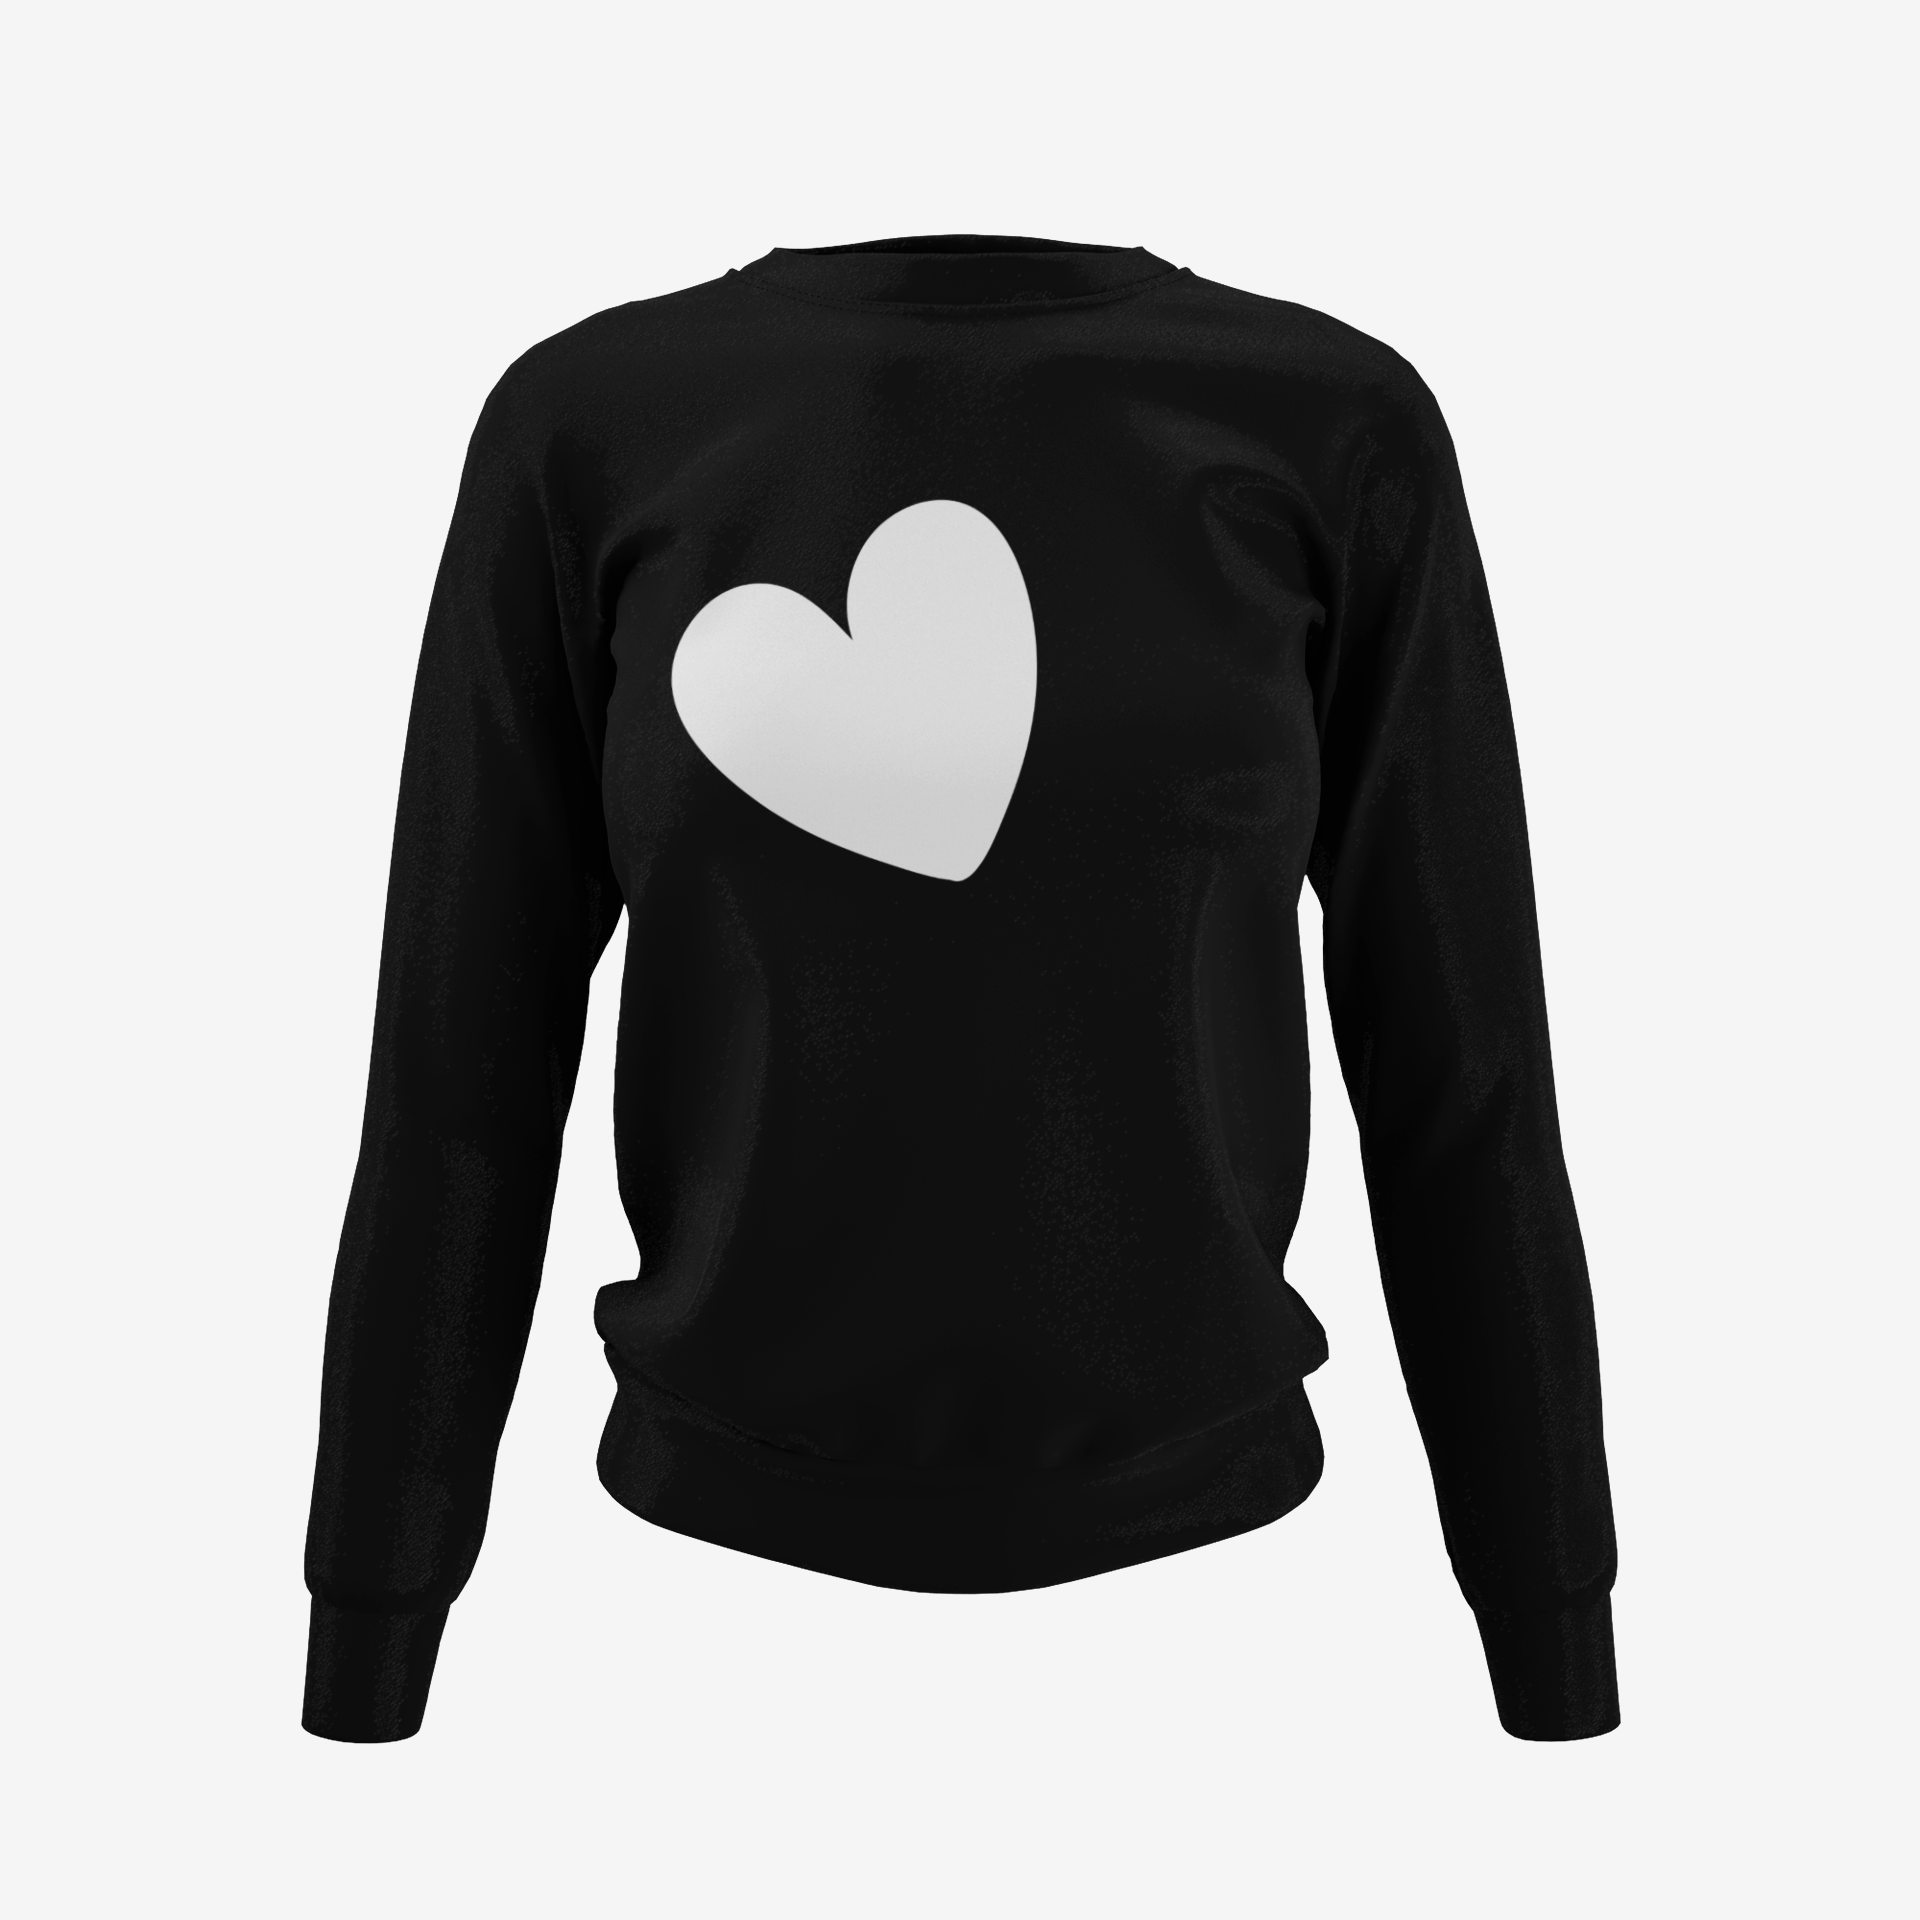 Chic Heart Sweatshirt